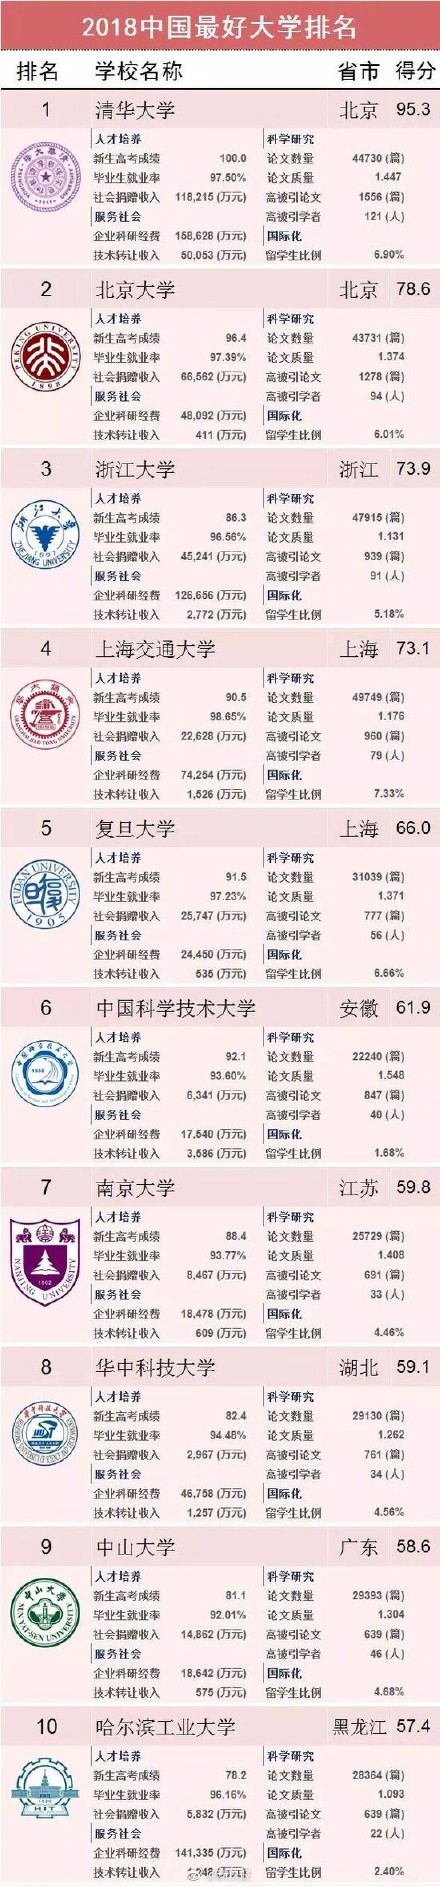 2018中国最好的大学排名是怎样的 这是你心目中理想的排名吗